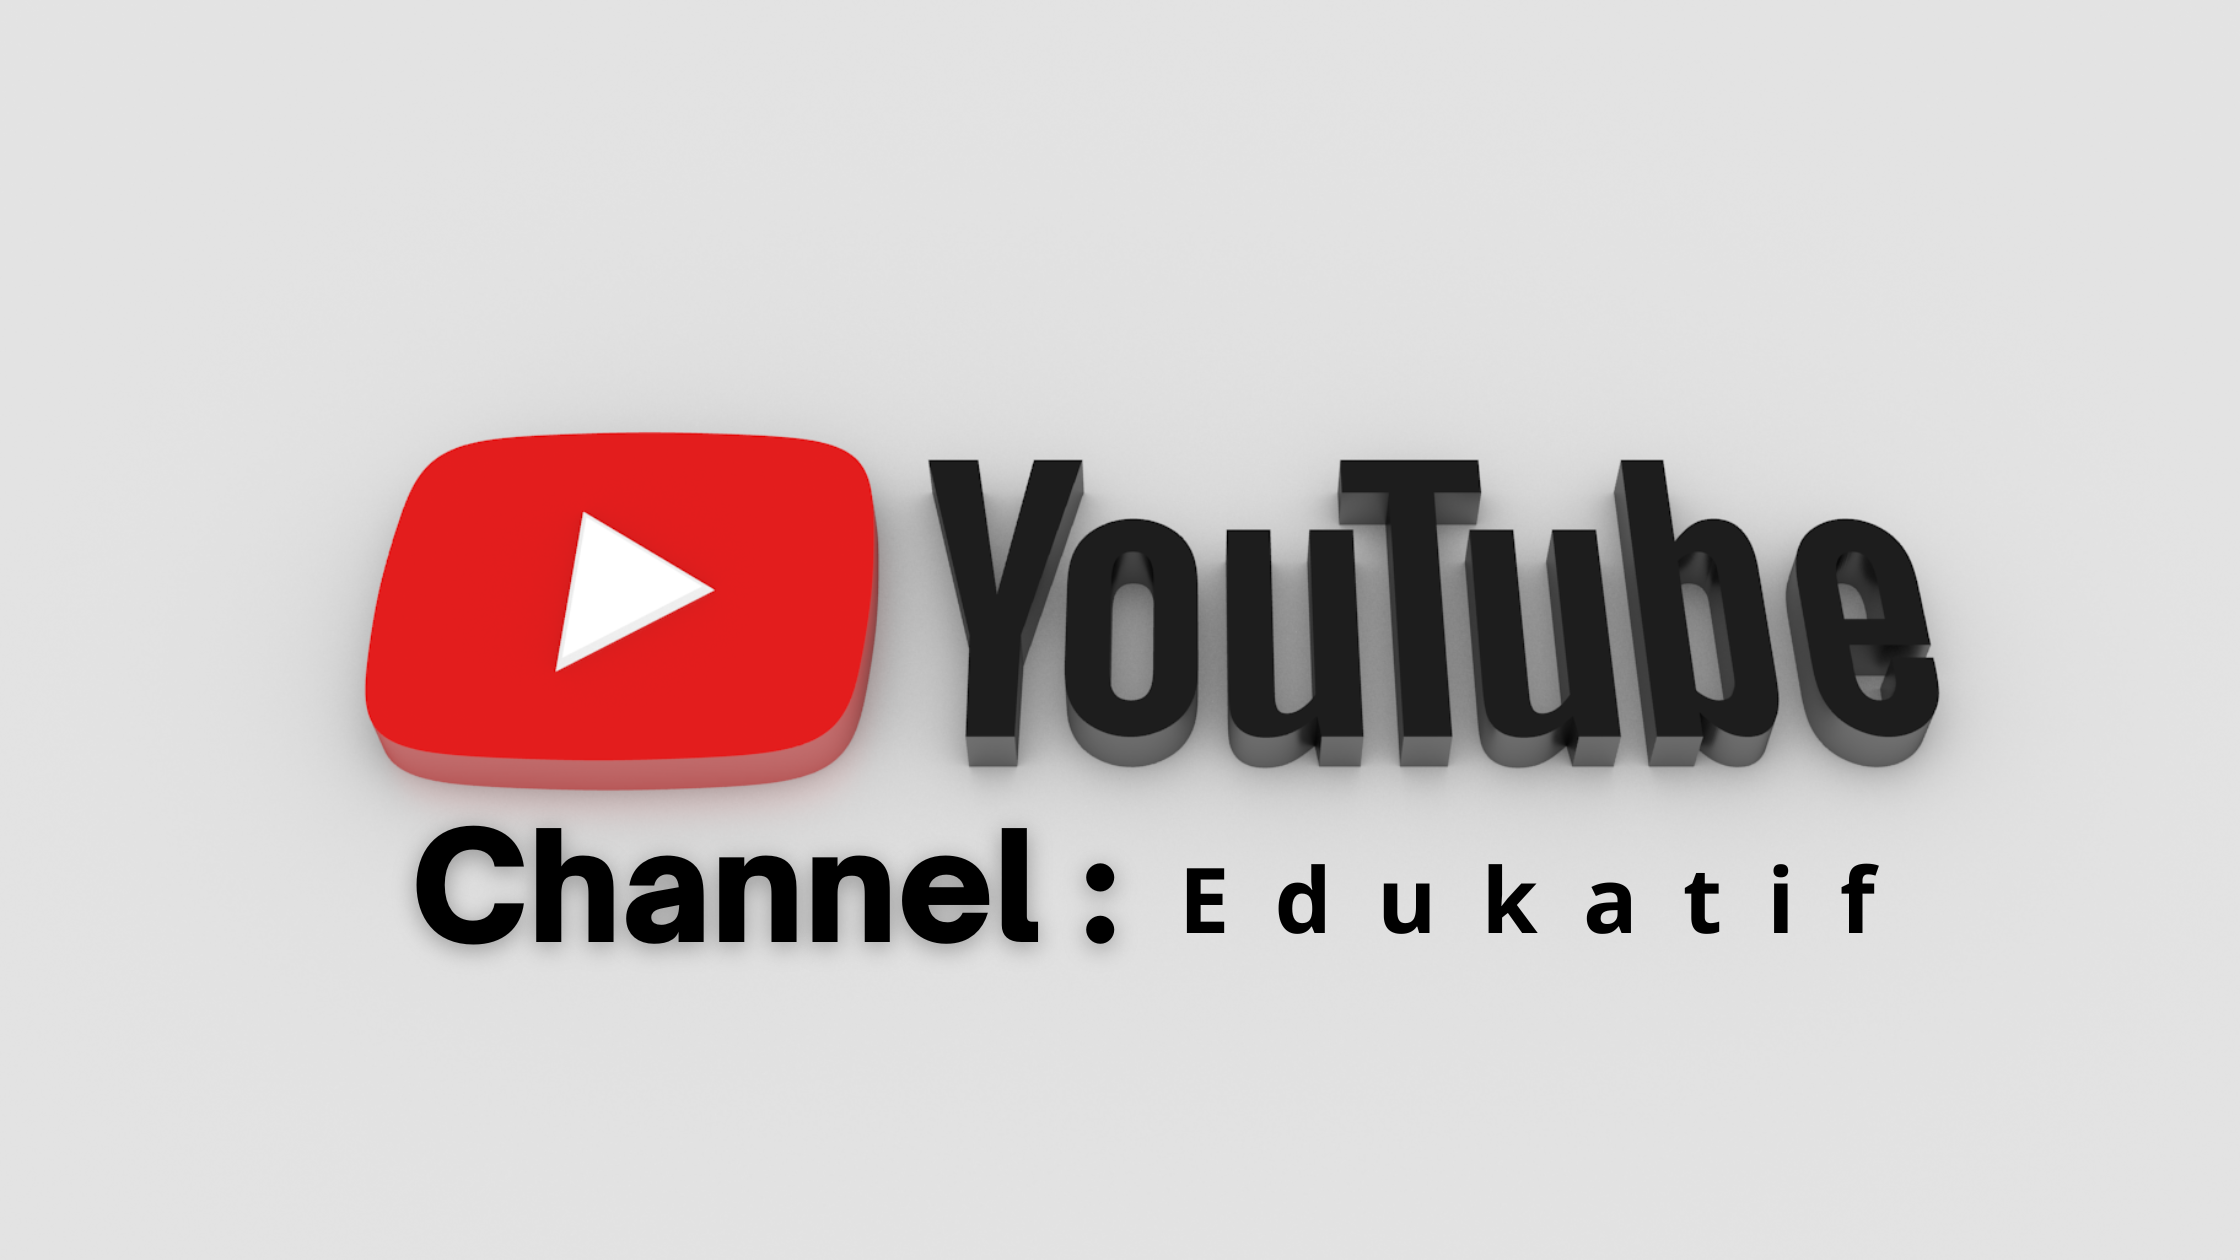 Channel YouTube edukatif